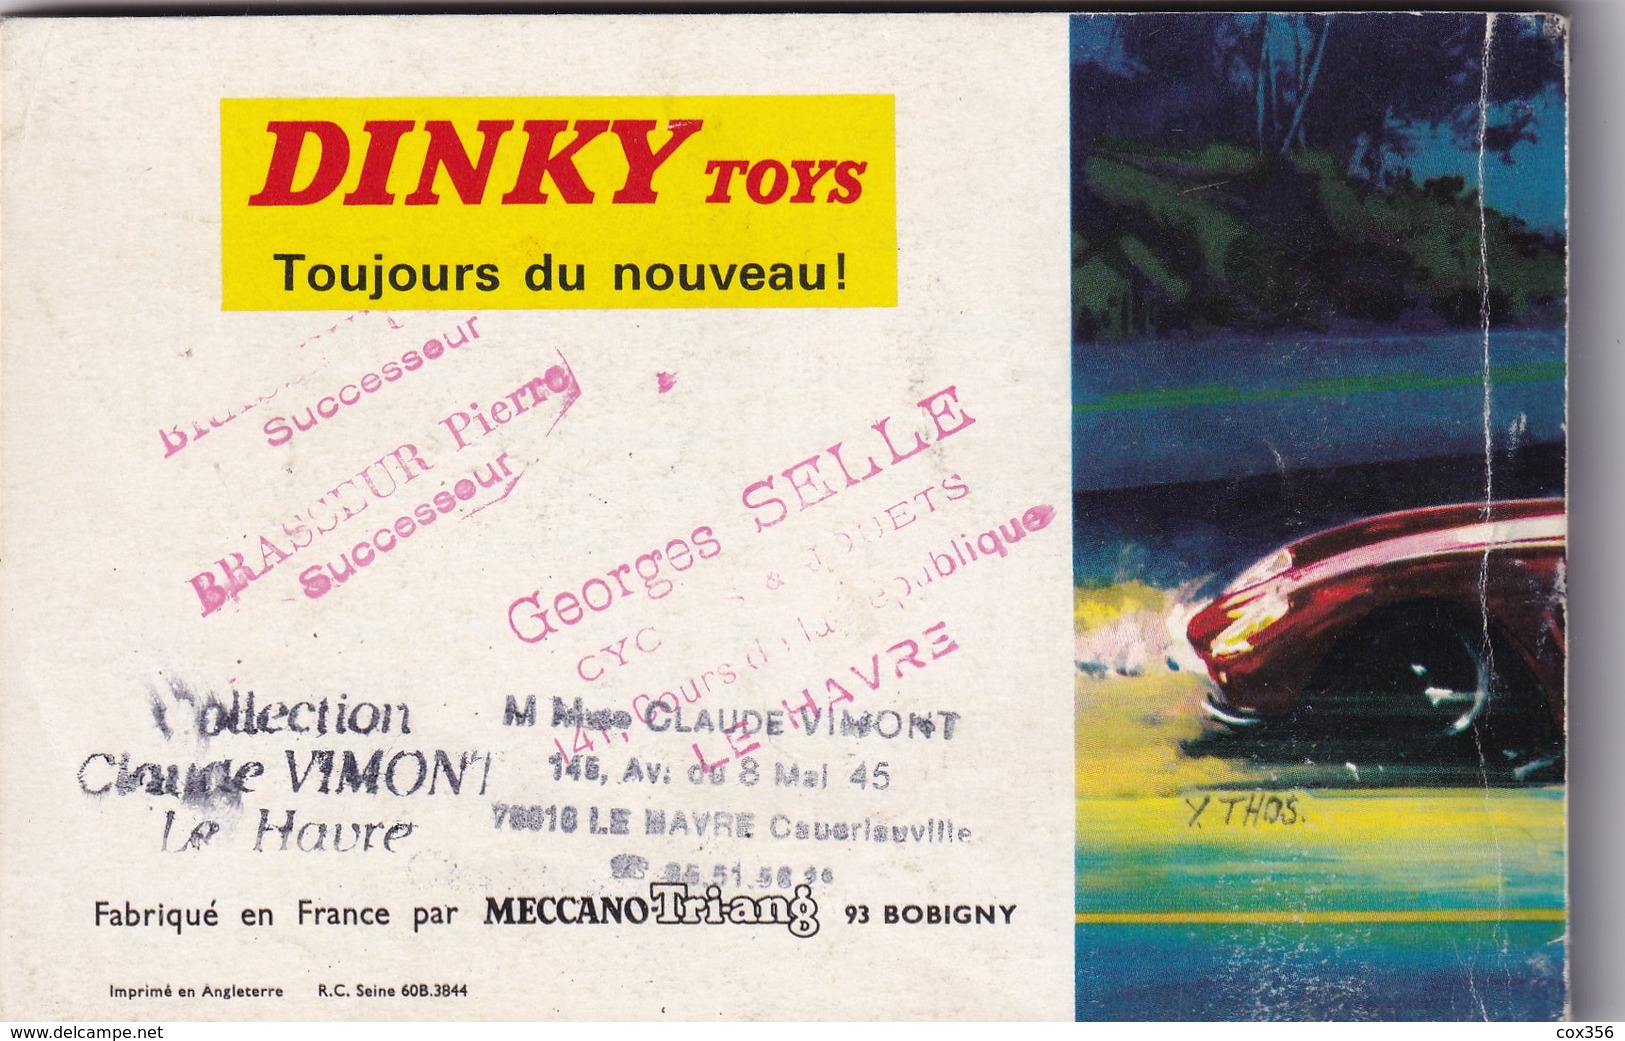 DINKY TOYS CATALOGUE DINKY 1967 - Modellbau